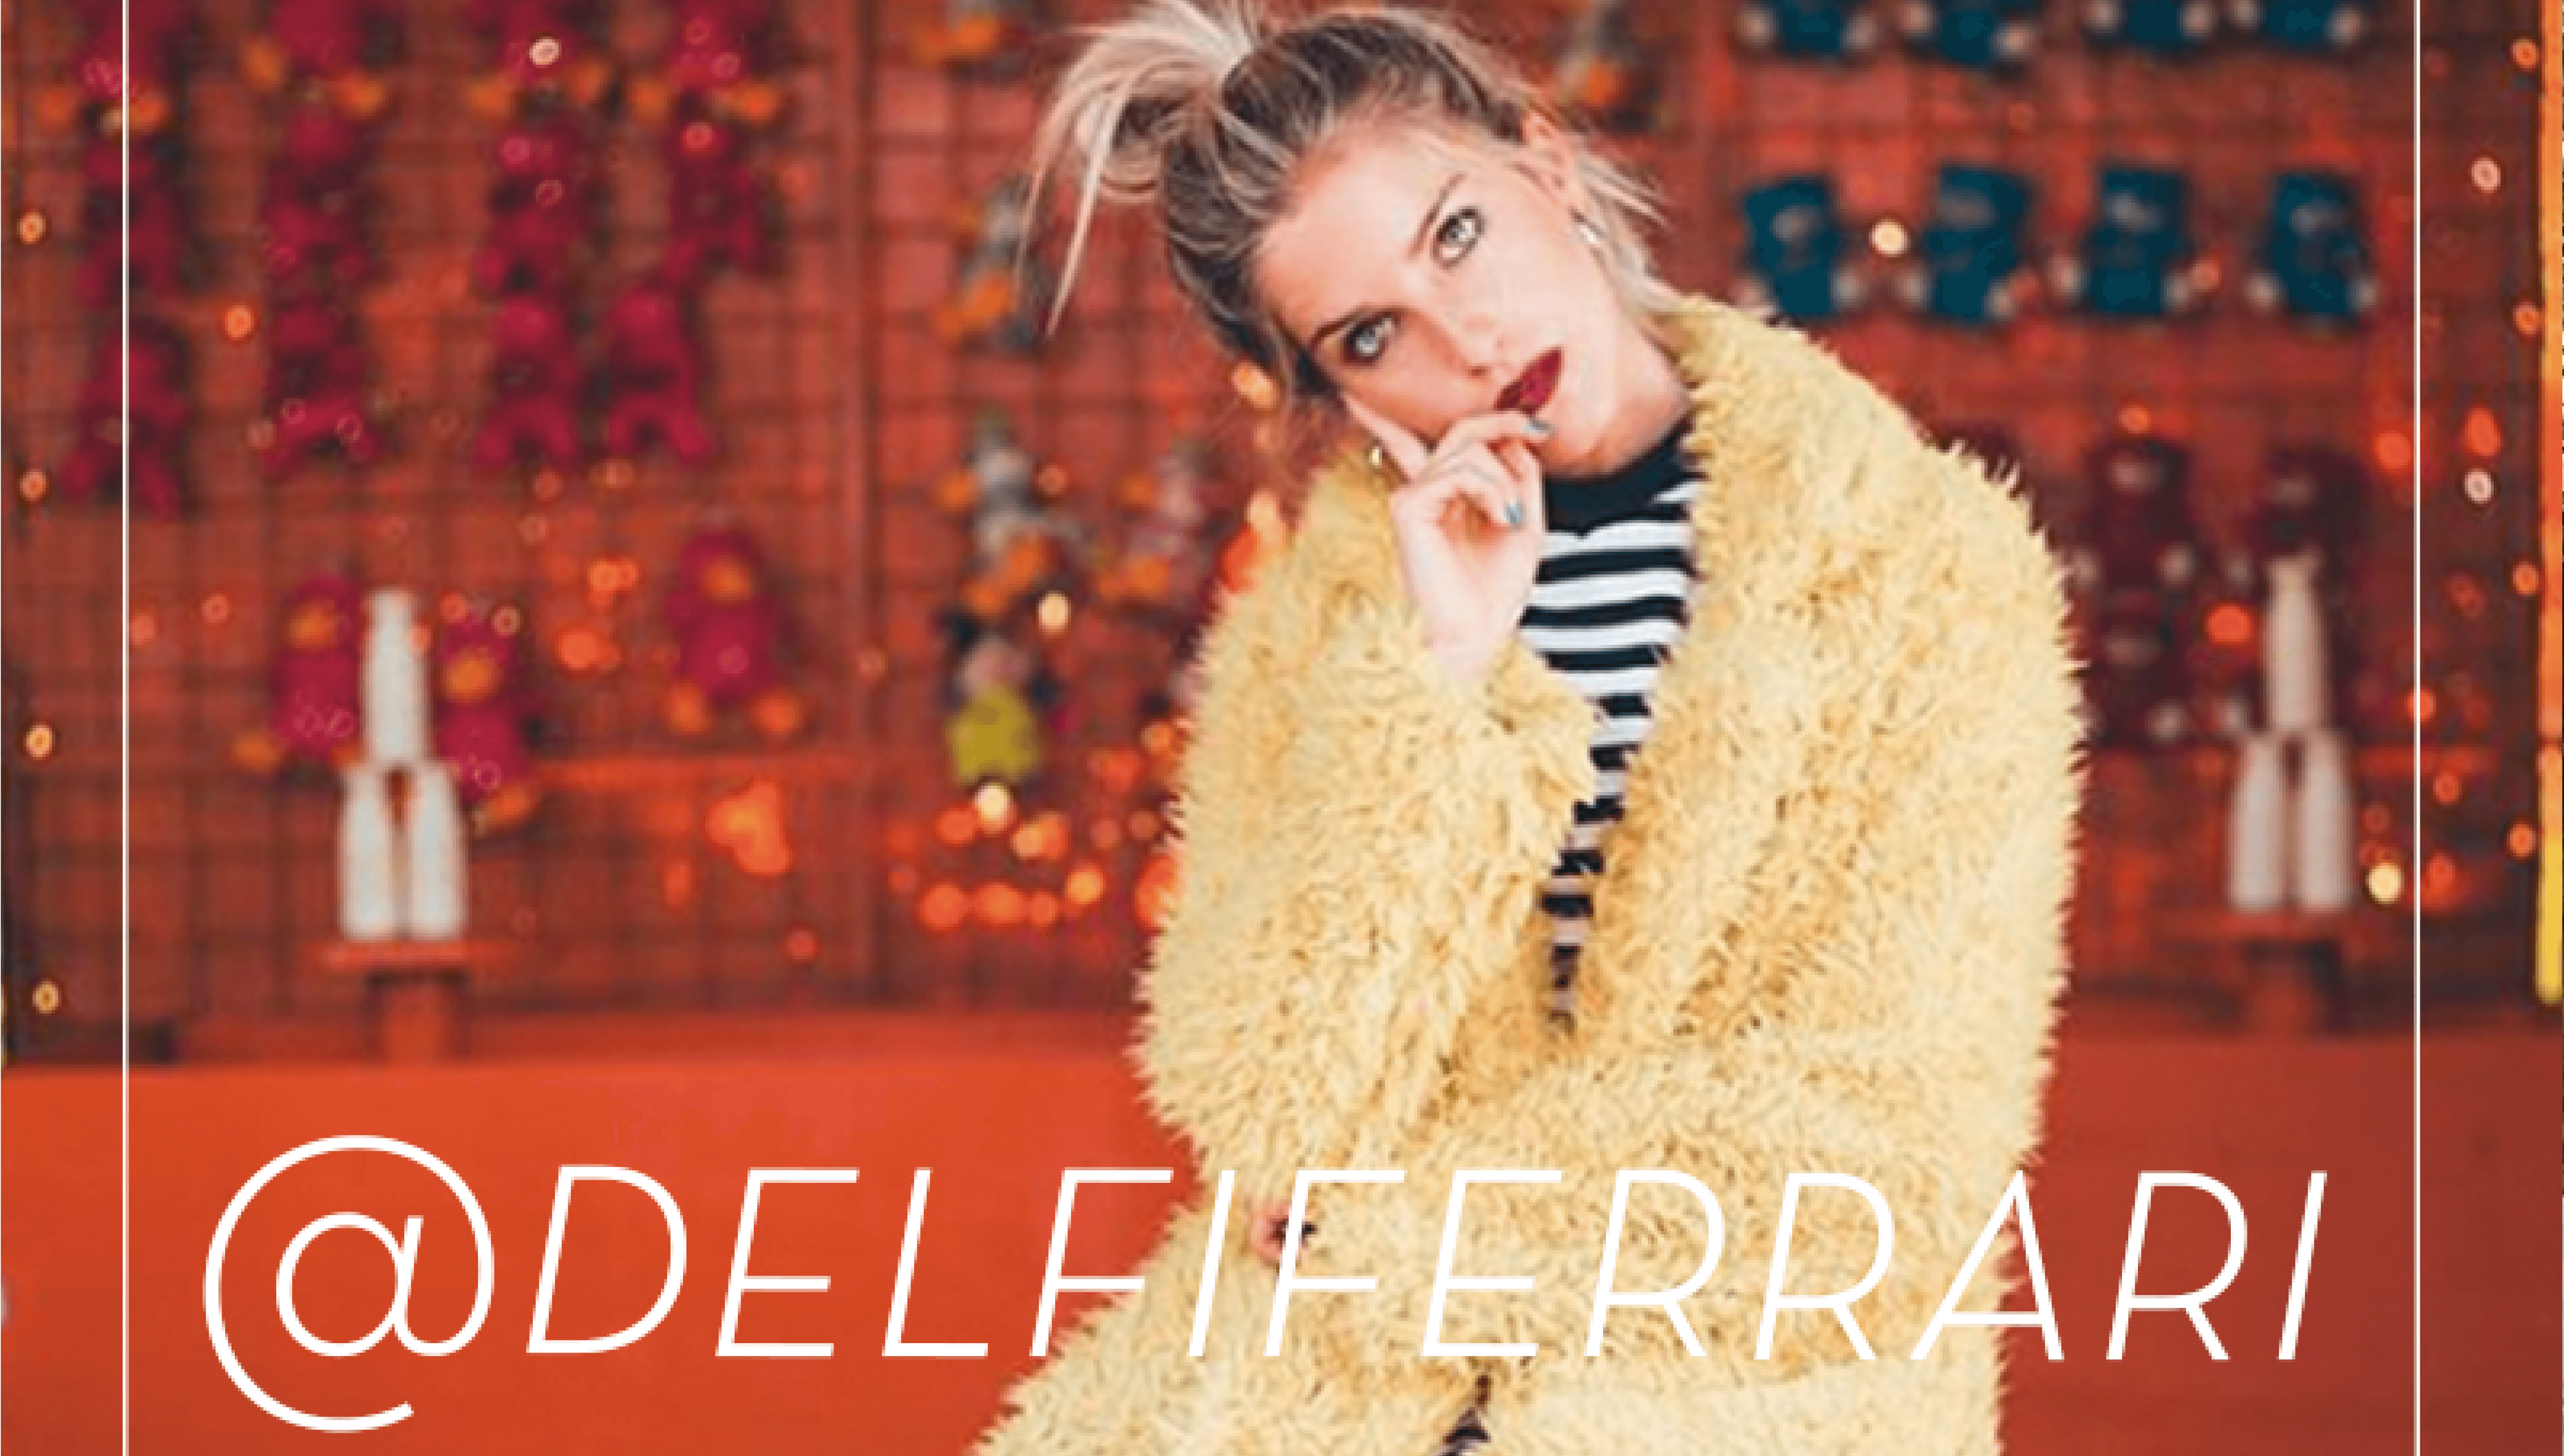 Delfi Ferrari: cuentapropista de la belleza